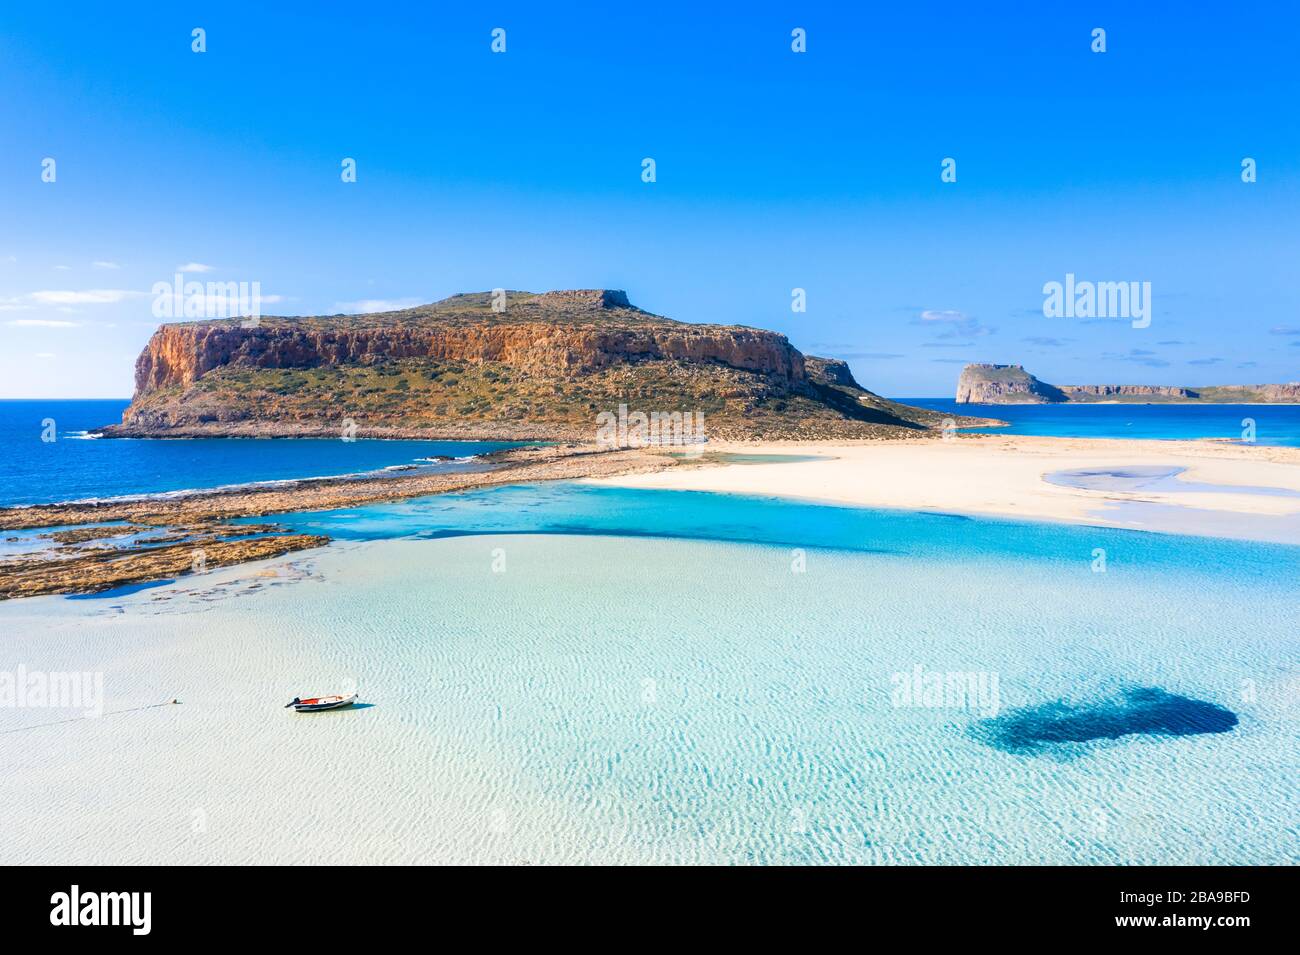 Tolle Aussicht auf die Lagune von Balos mit magischen türkisfarbene Wasser, Lagunen, tropische Strände mit weißem Sand und Insel Gramvousa auf Kreta, Griechenland Stockfoto